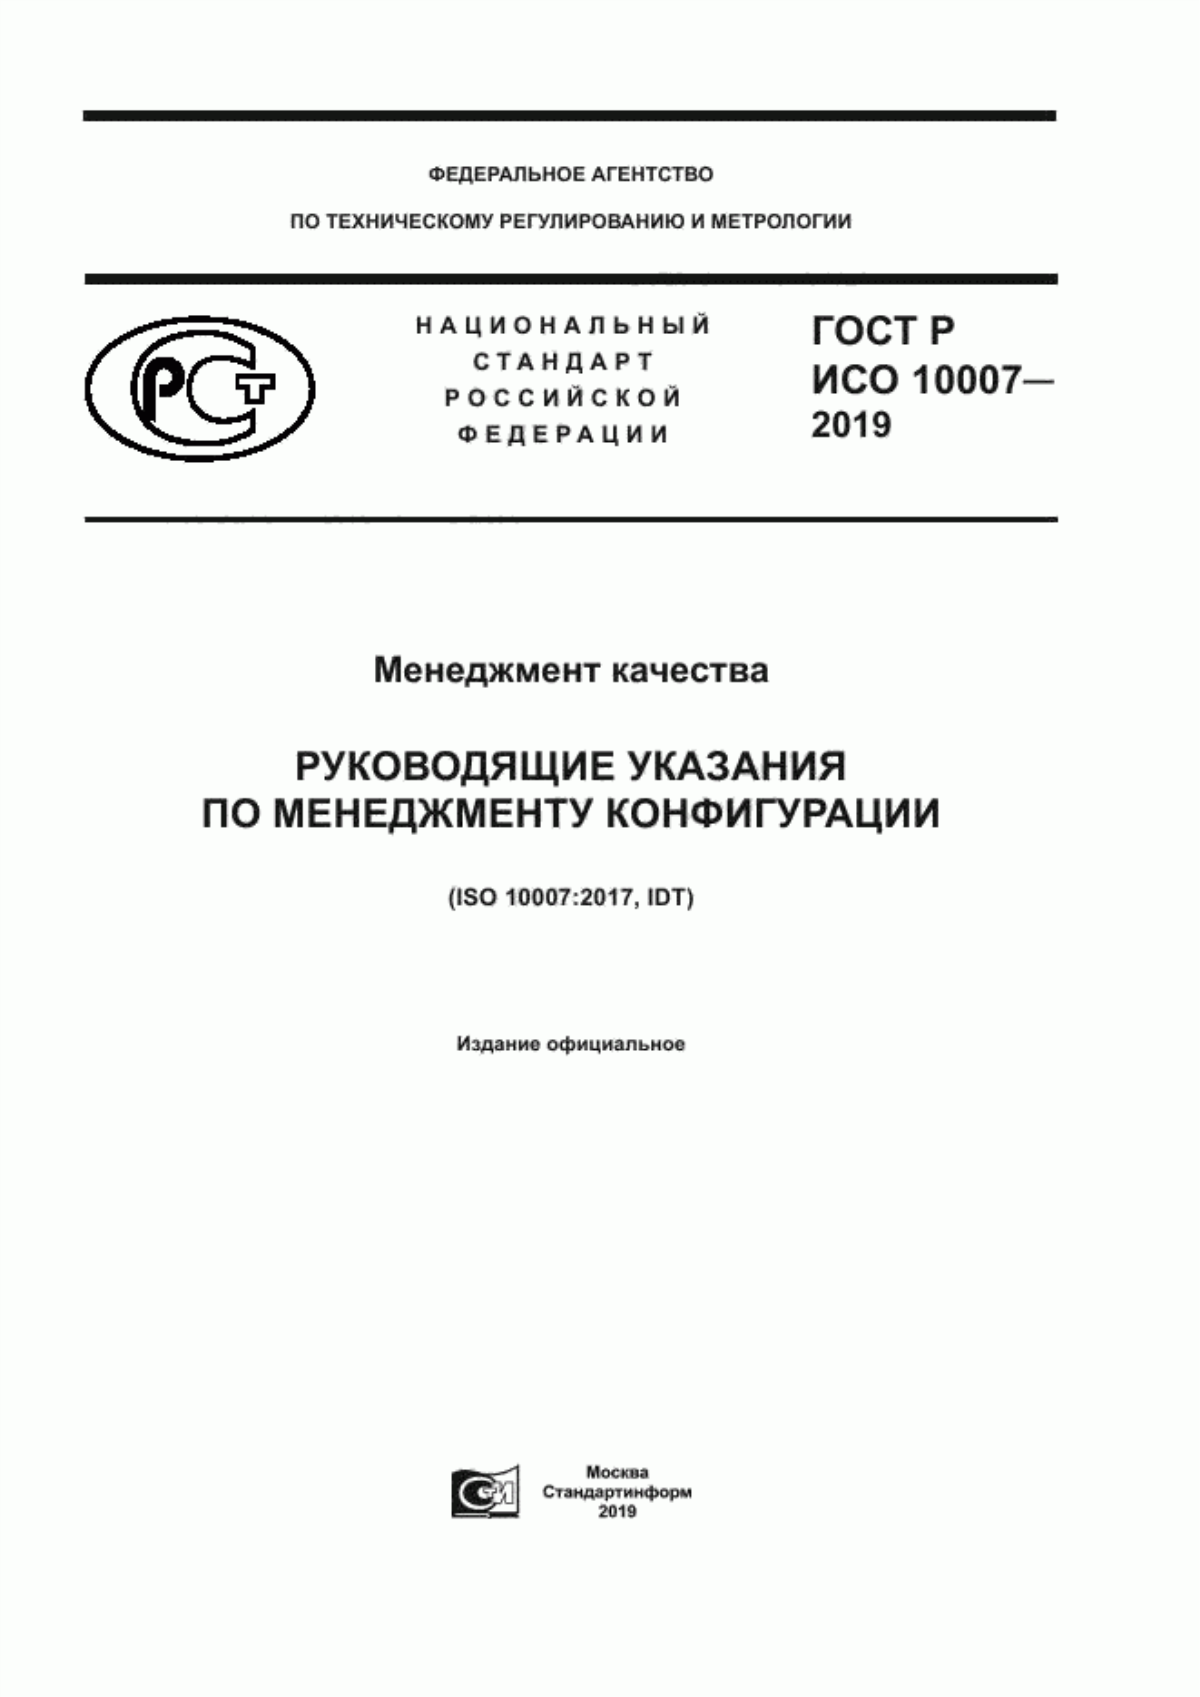 ГОСТ Р ИСО 10007-2019 Менеджмент качества. Руководящие указания по менеджменту конфигурации